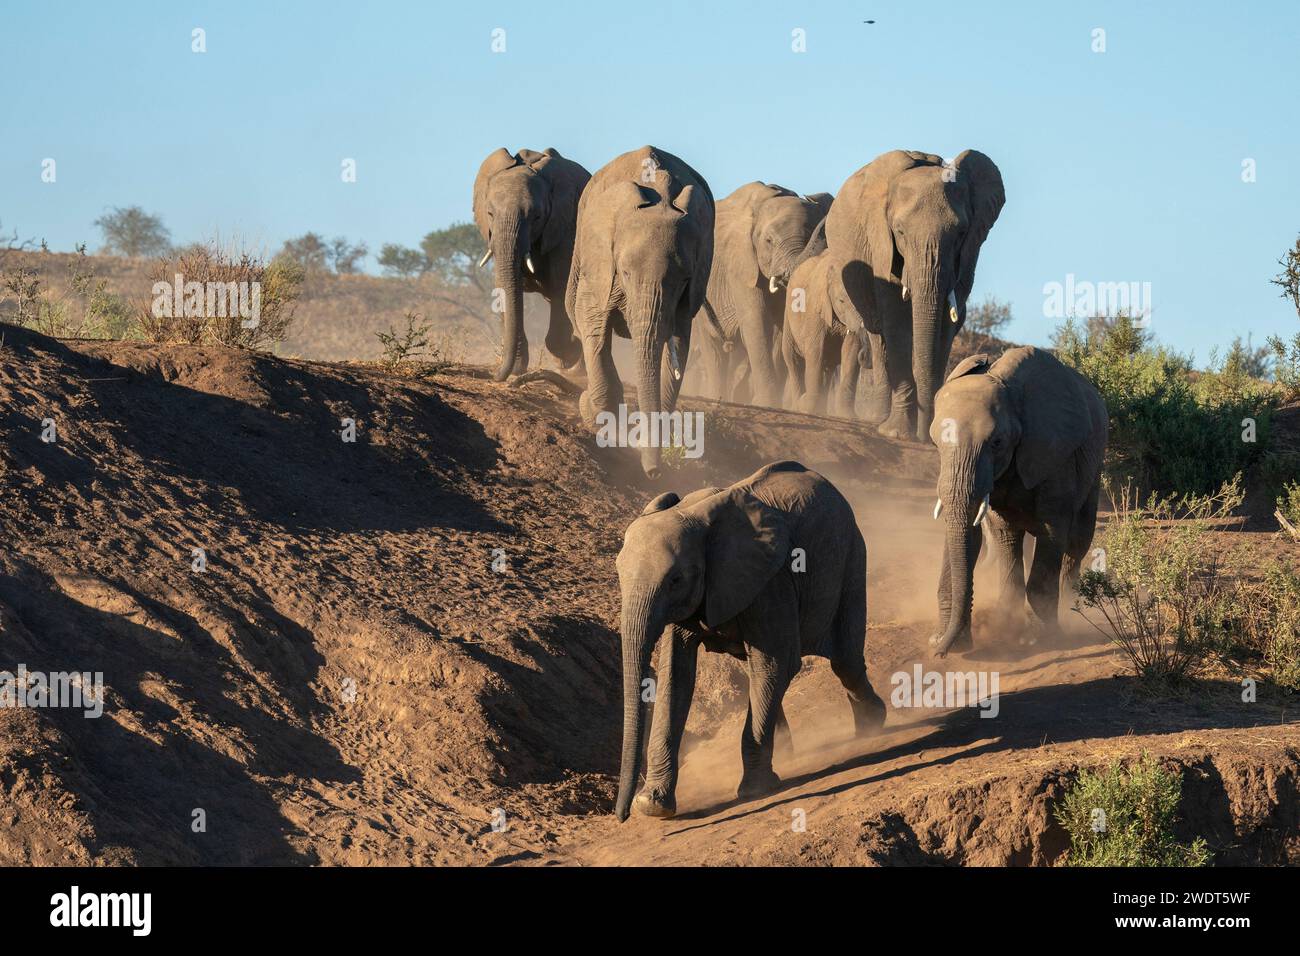 African elephant (Loxodonta africana) walking in line, Mashatu Game Reserve, Botswana, Africa Stock Photo